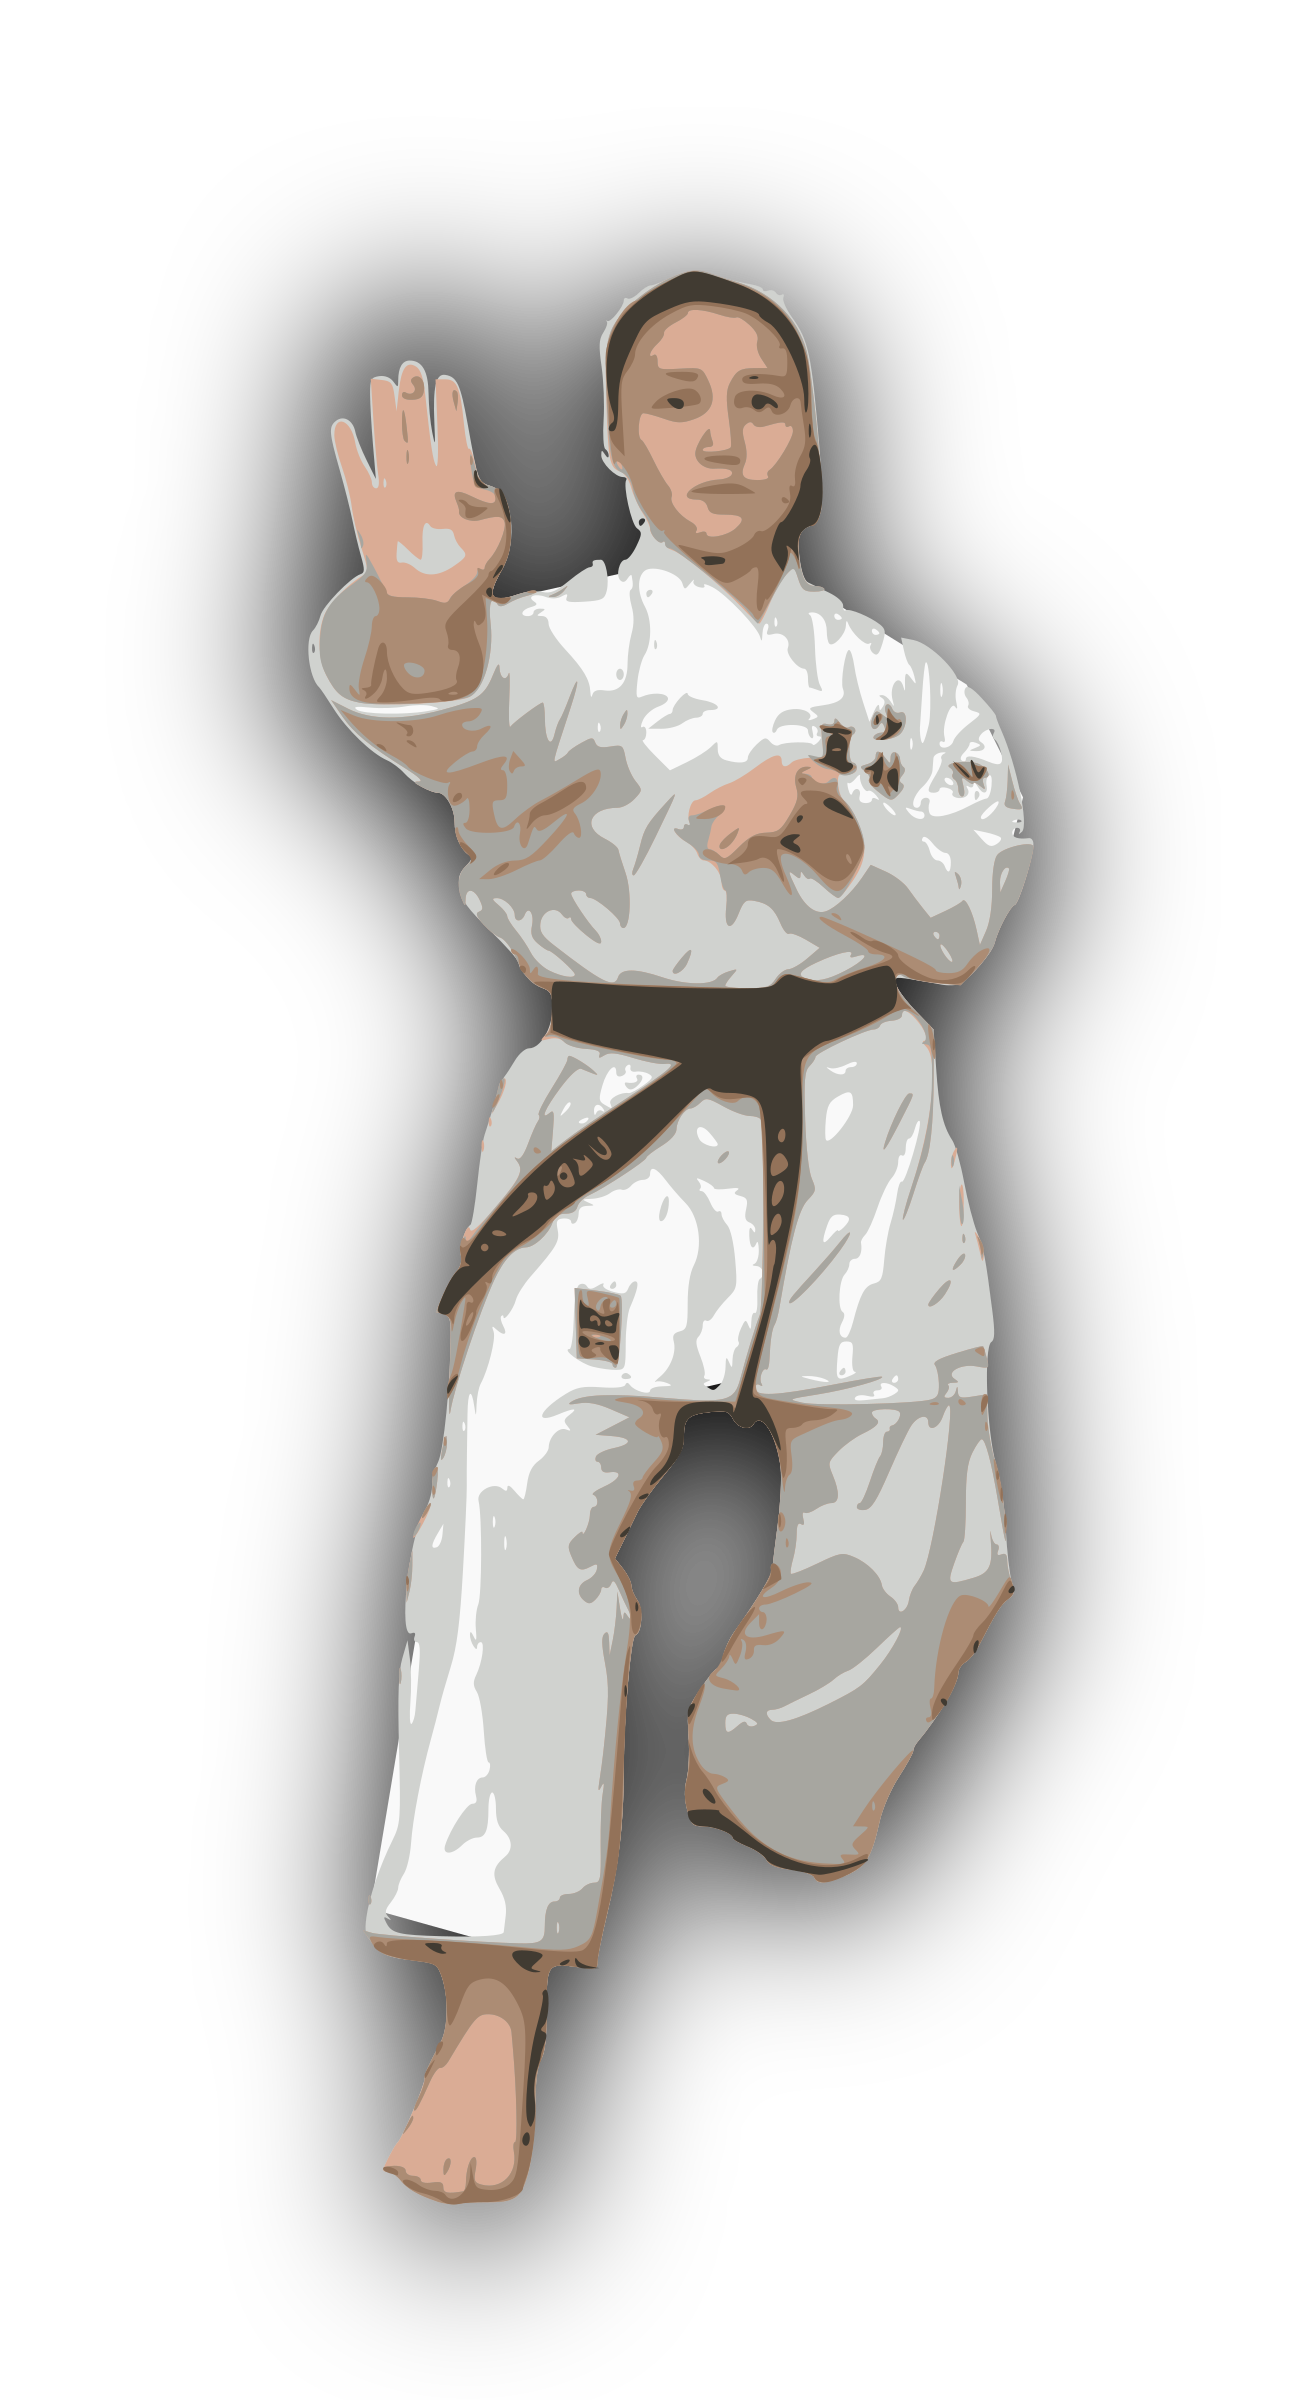 karate clipart martial arts